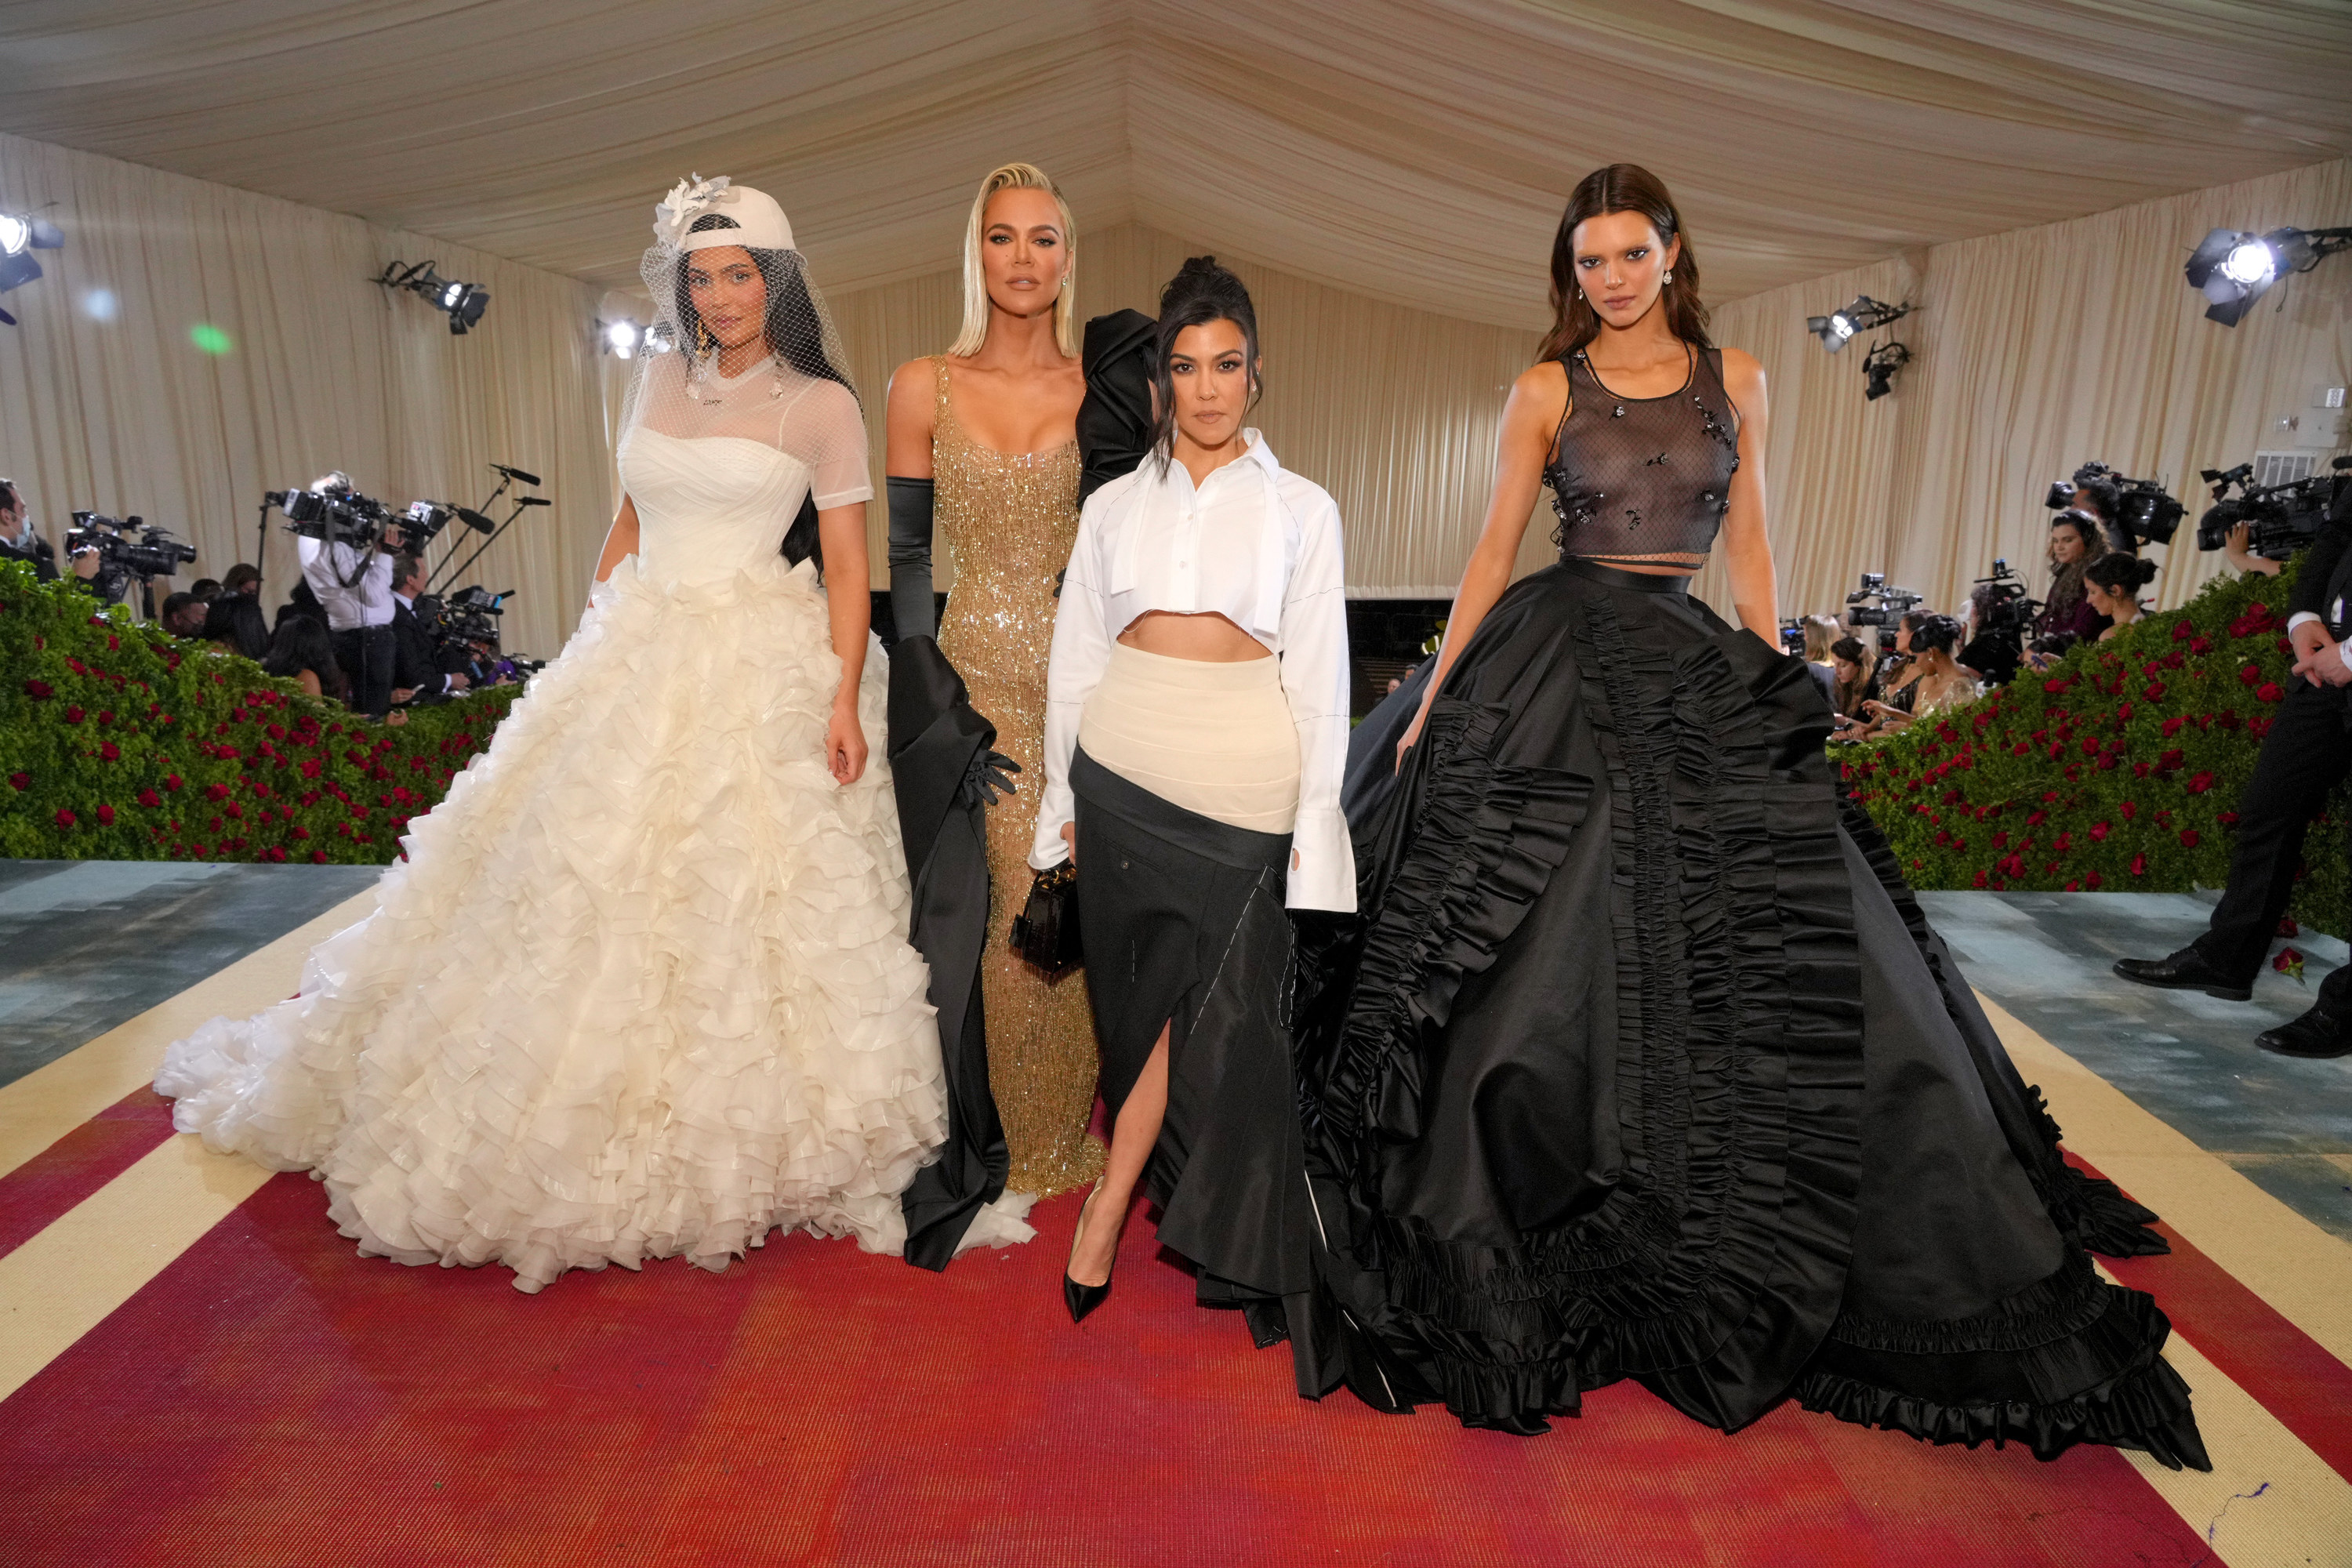 The Kardashian/Jenner sisters